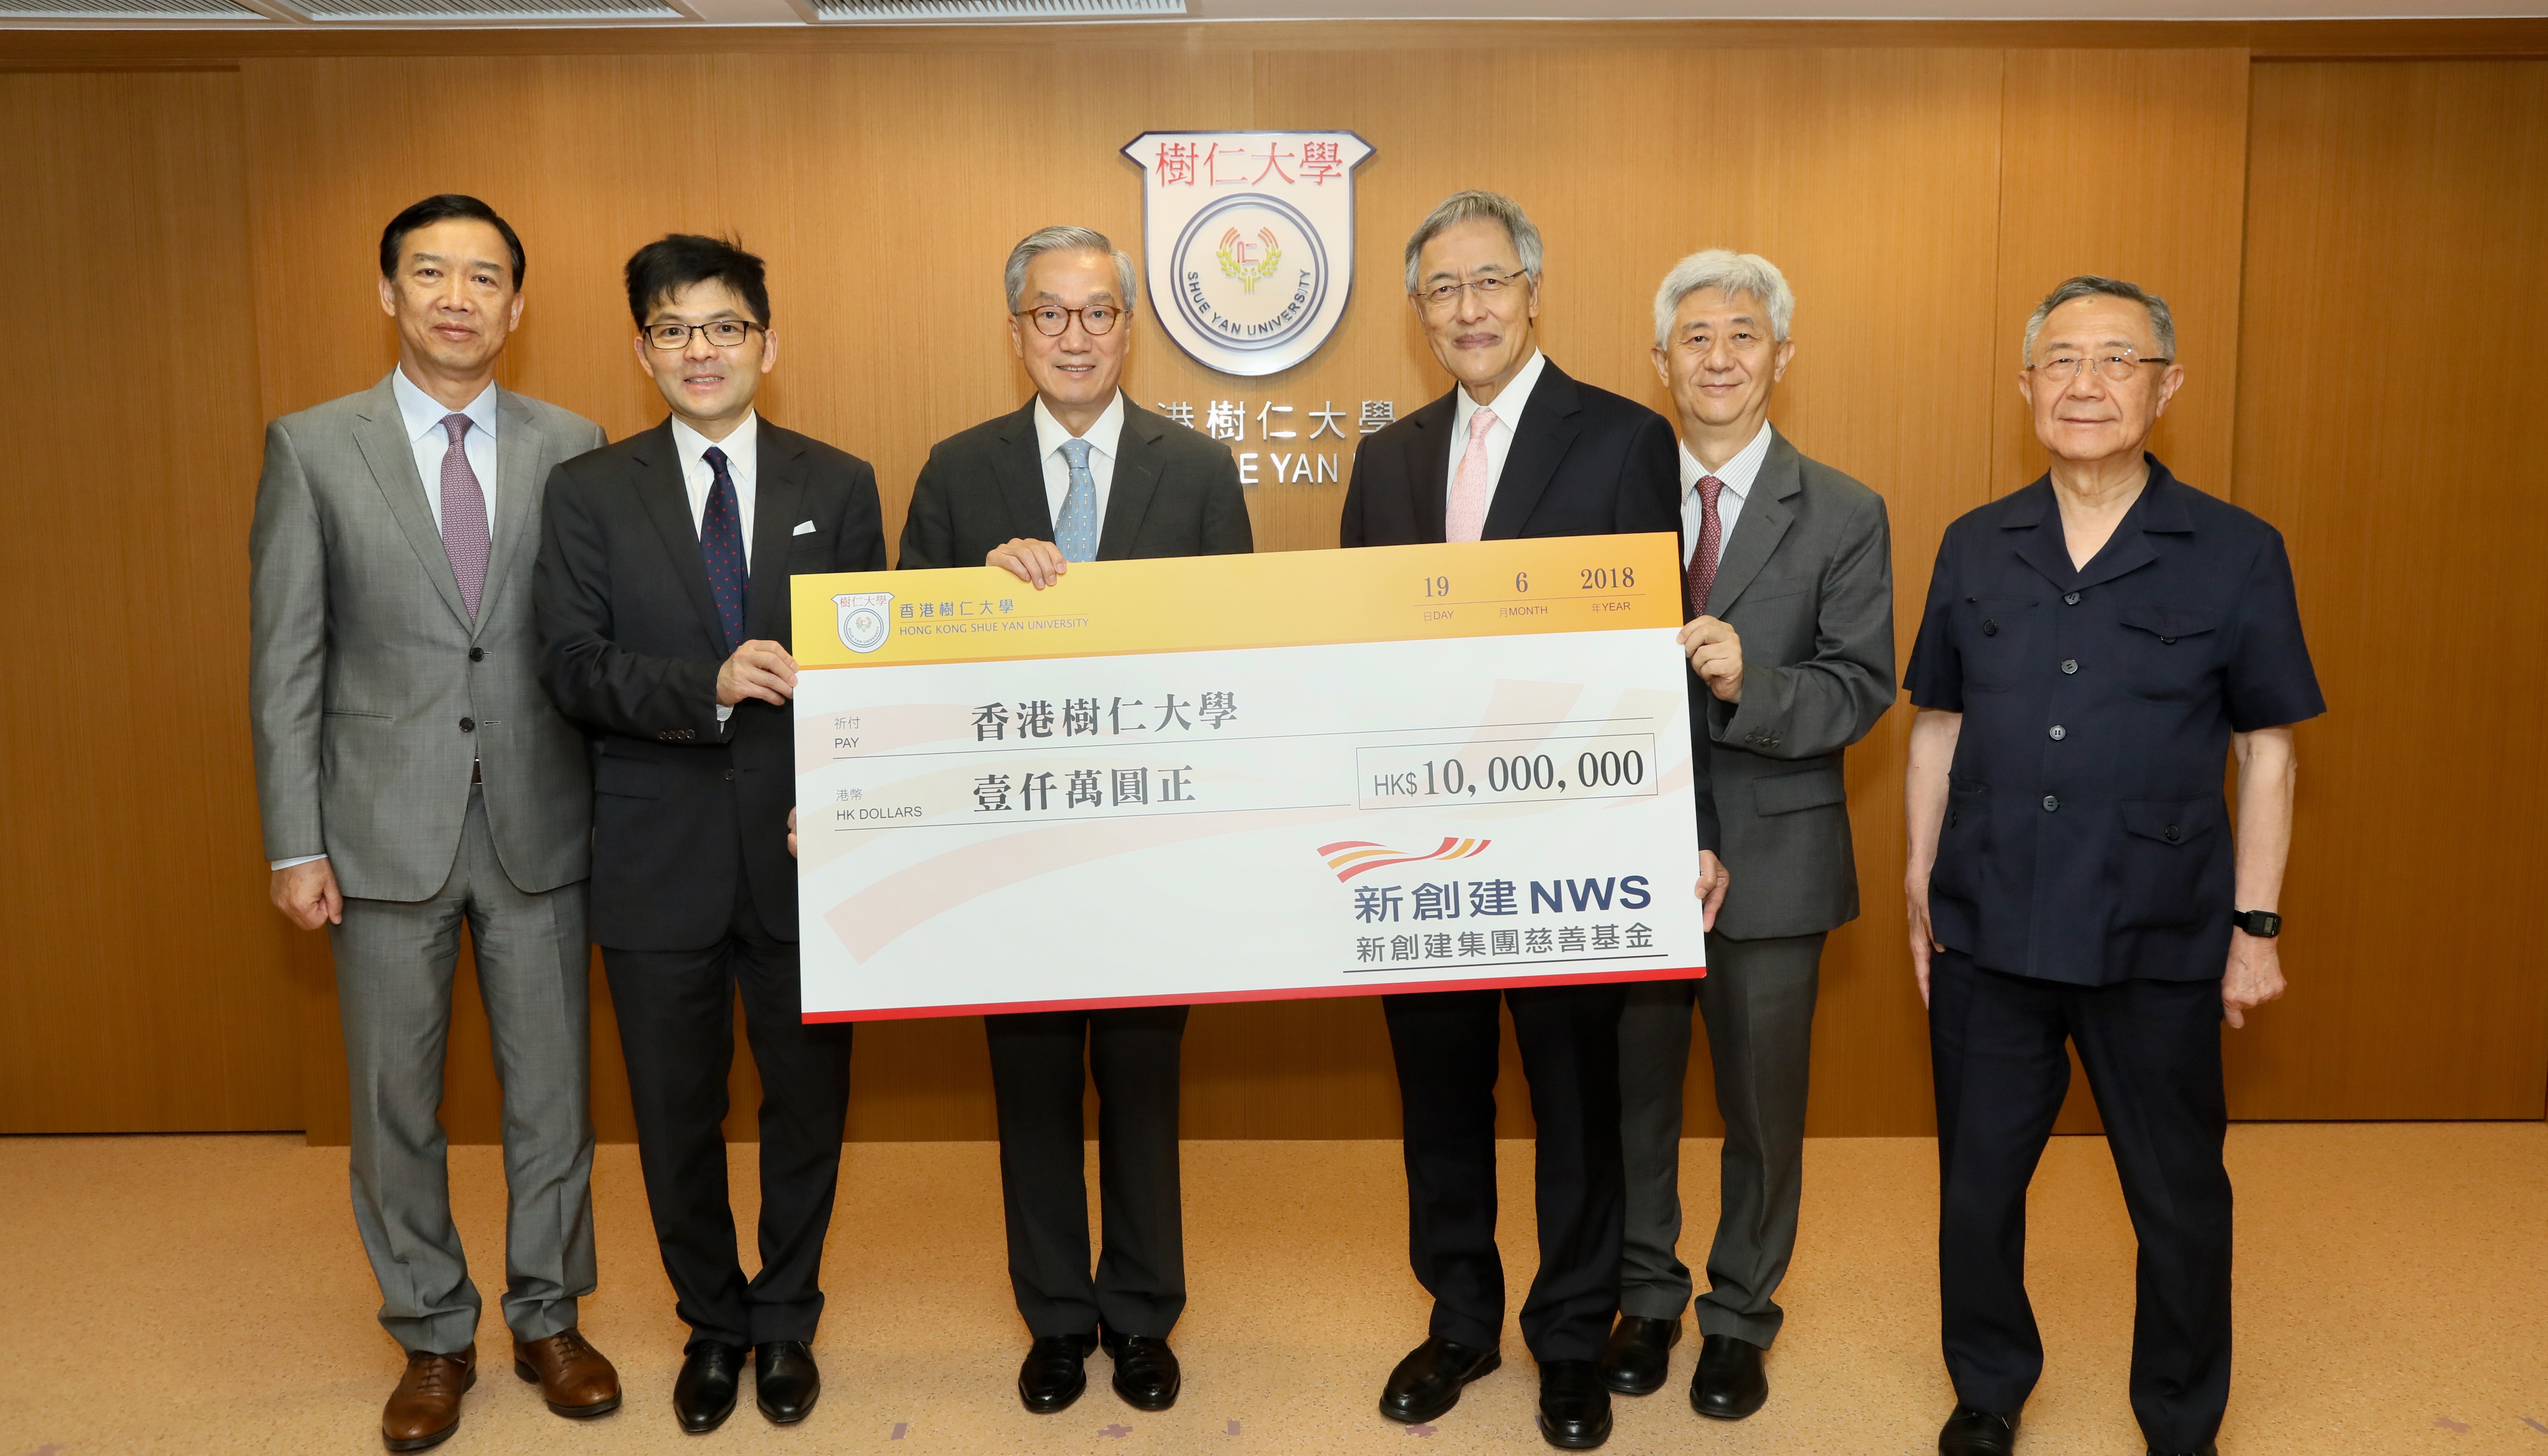 新创建集团慈善基金捐款一千万港元予香港树仁大学以提升教学设施